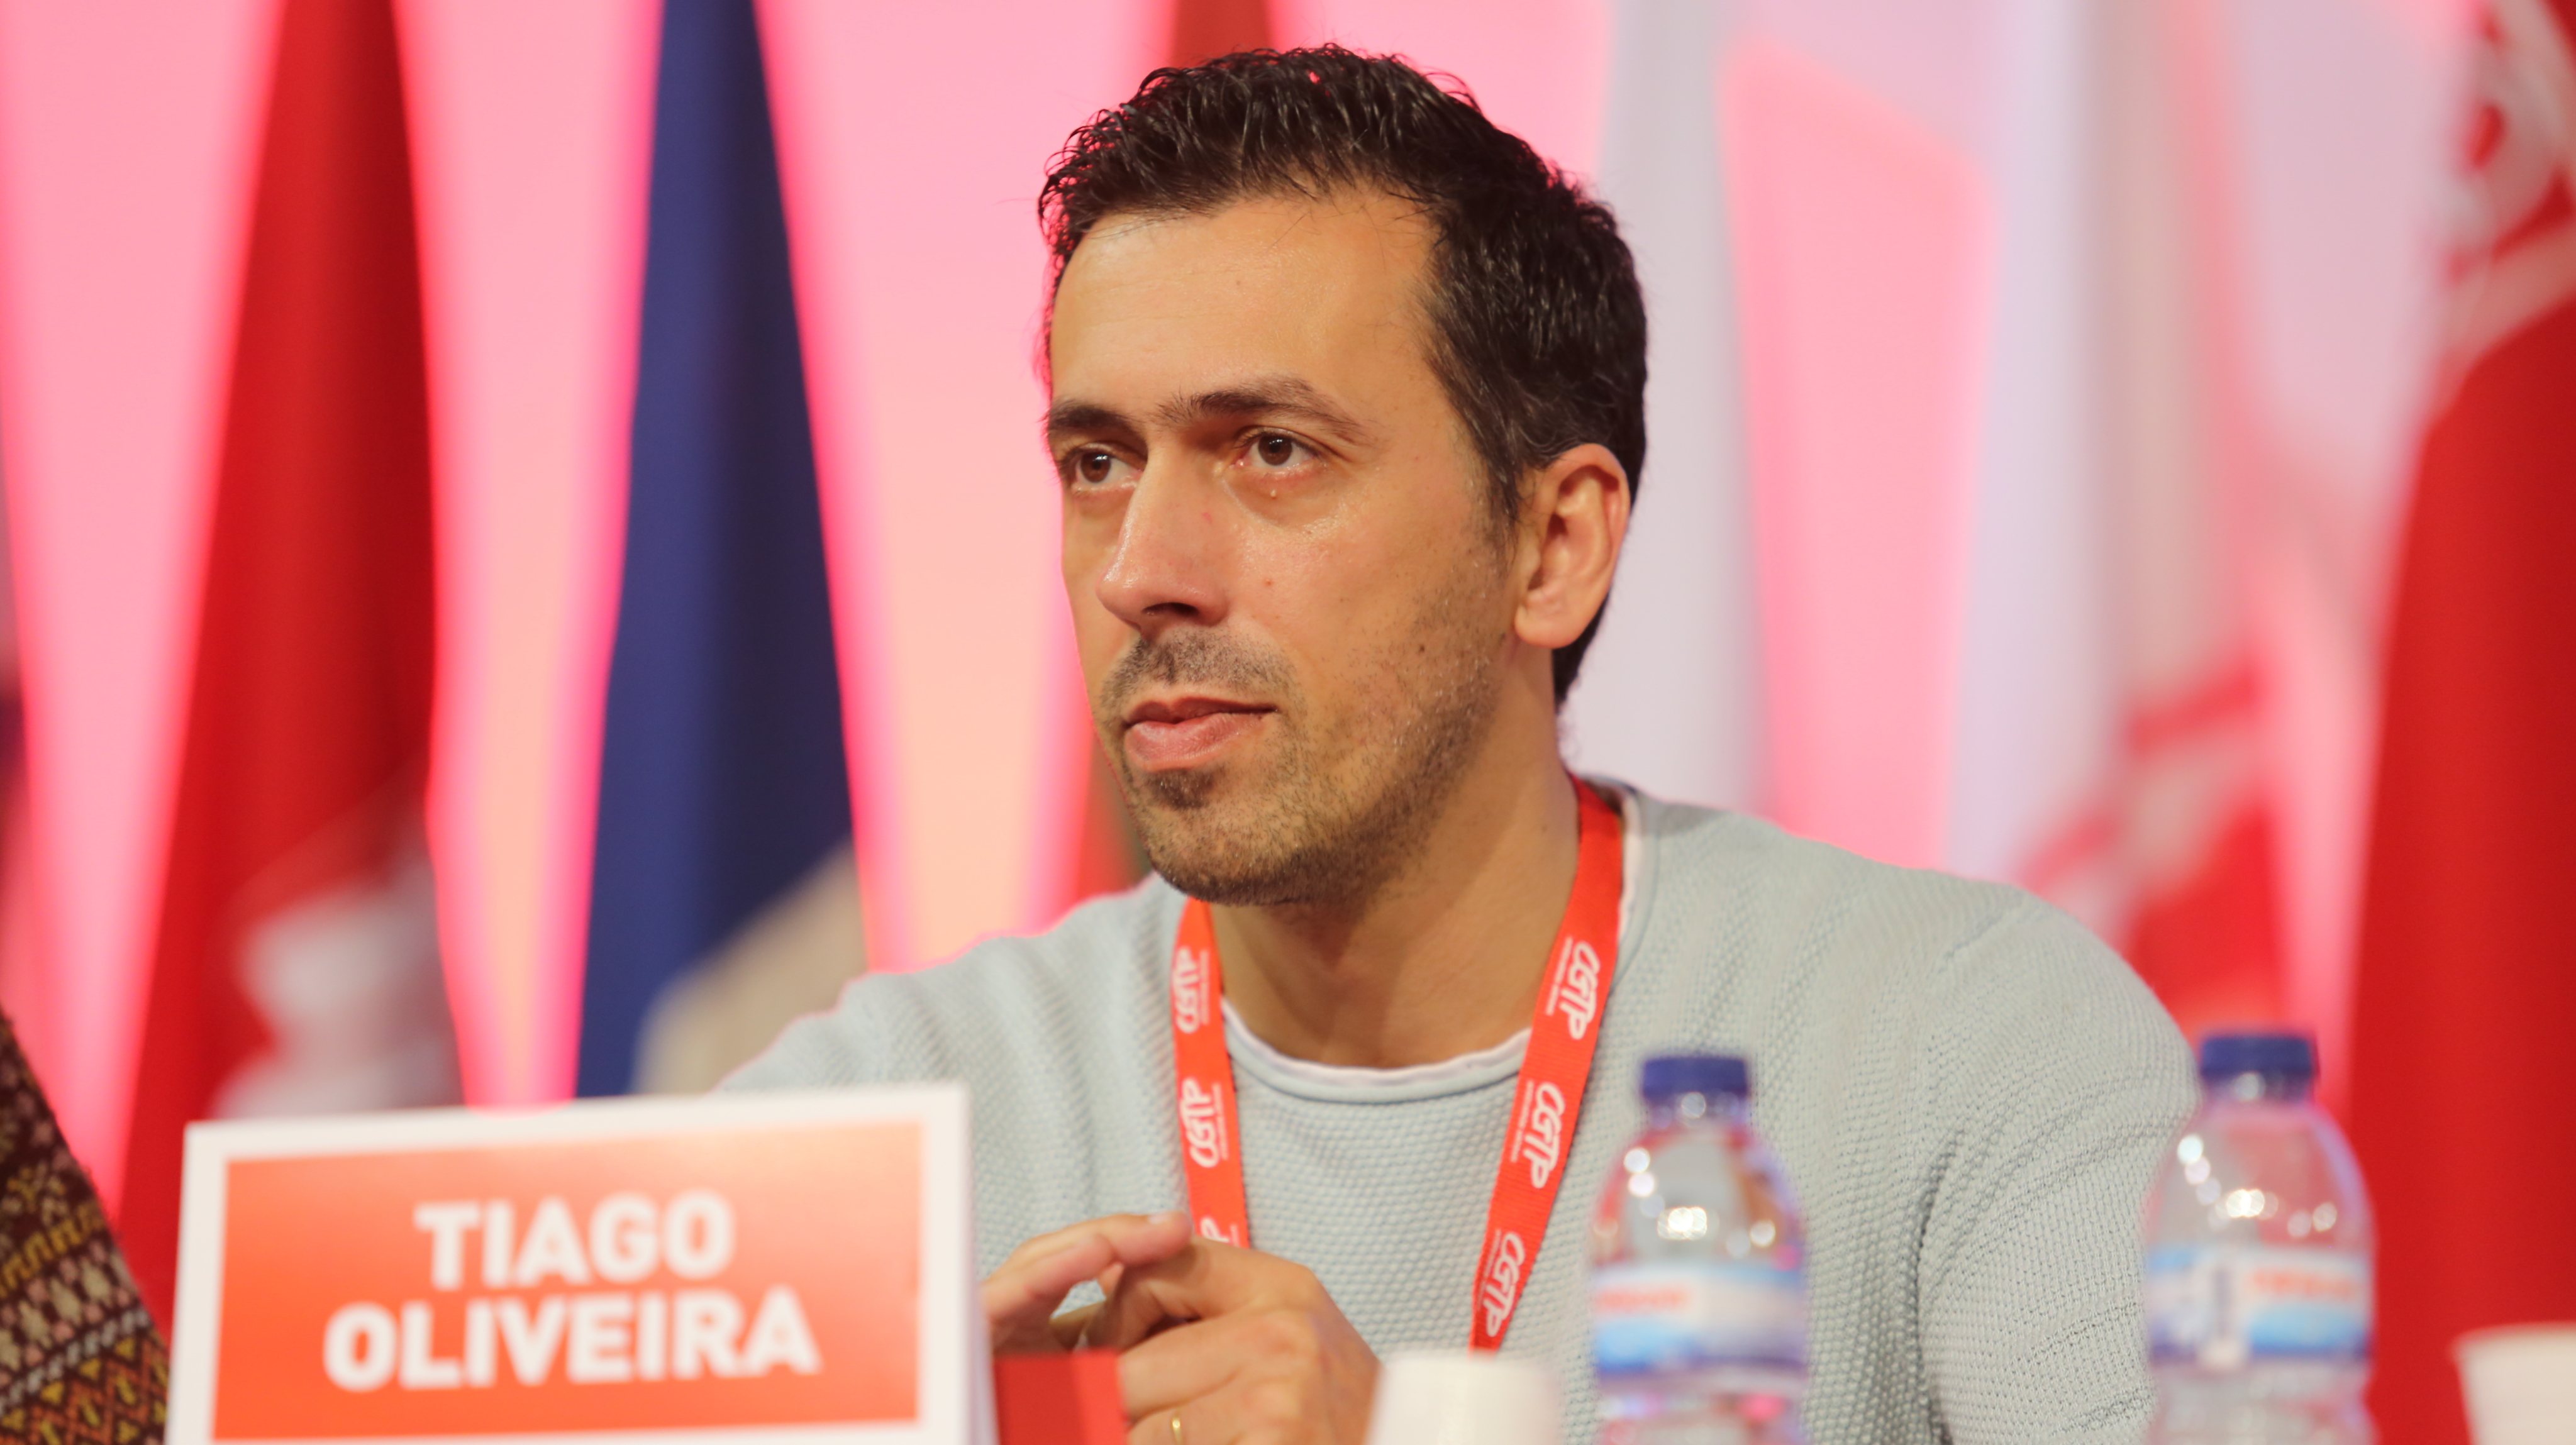 Tiago Oliveira, de 43 anos, é atualmente coordenador da União de Sindicatos do Porto